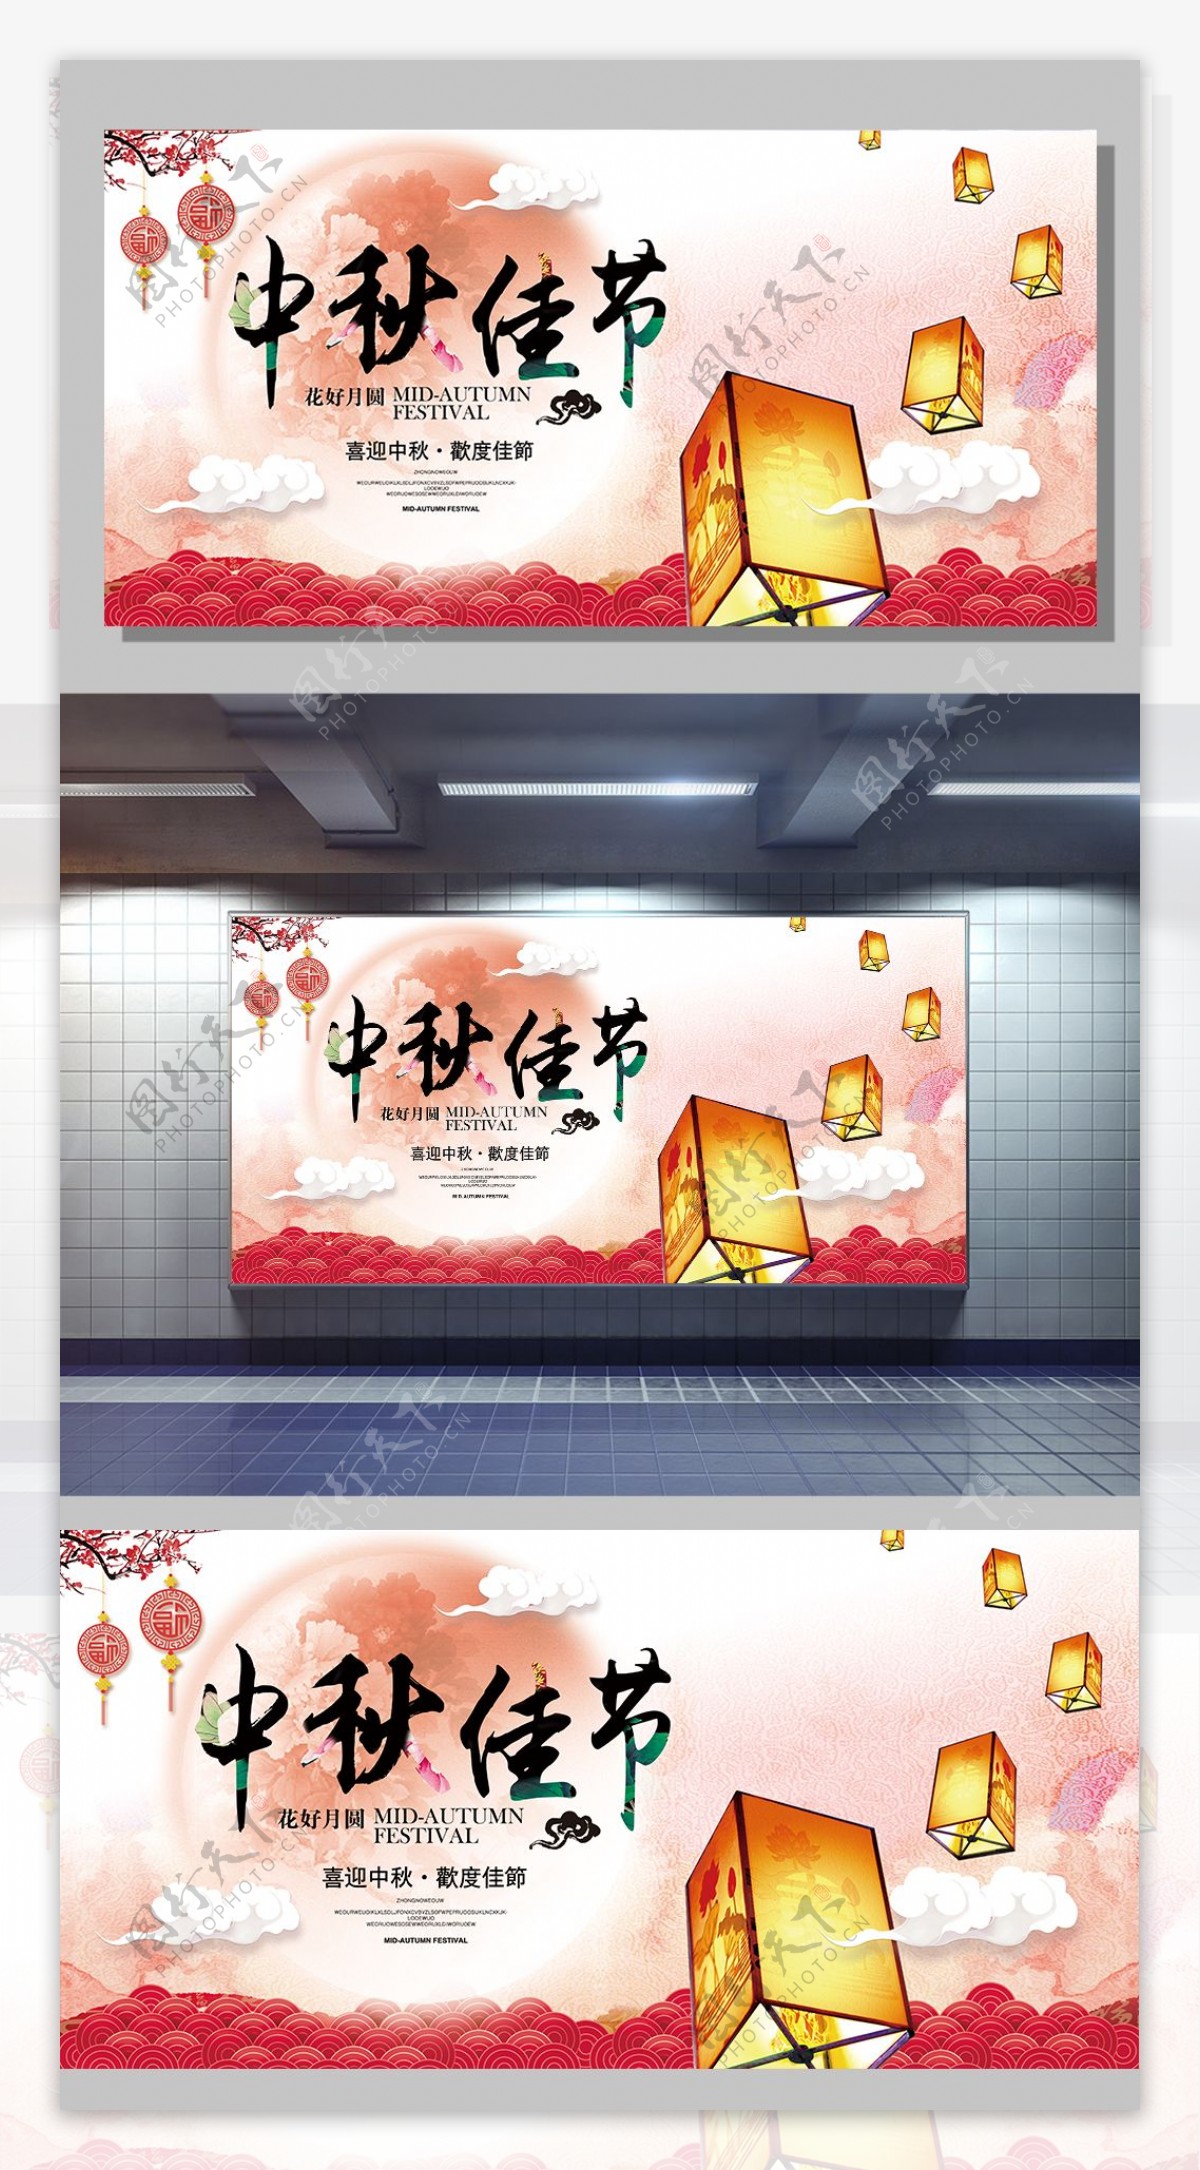 2017中国风中秋佳节宣传展板设计模板